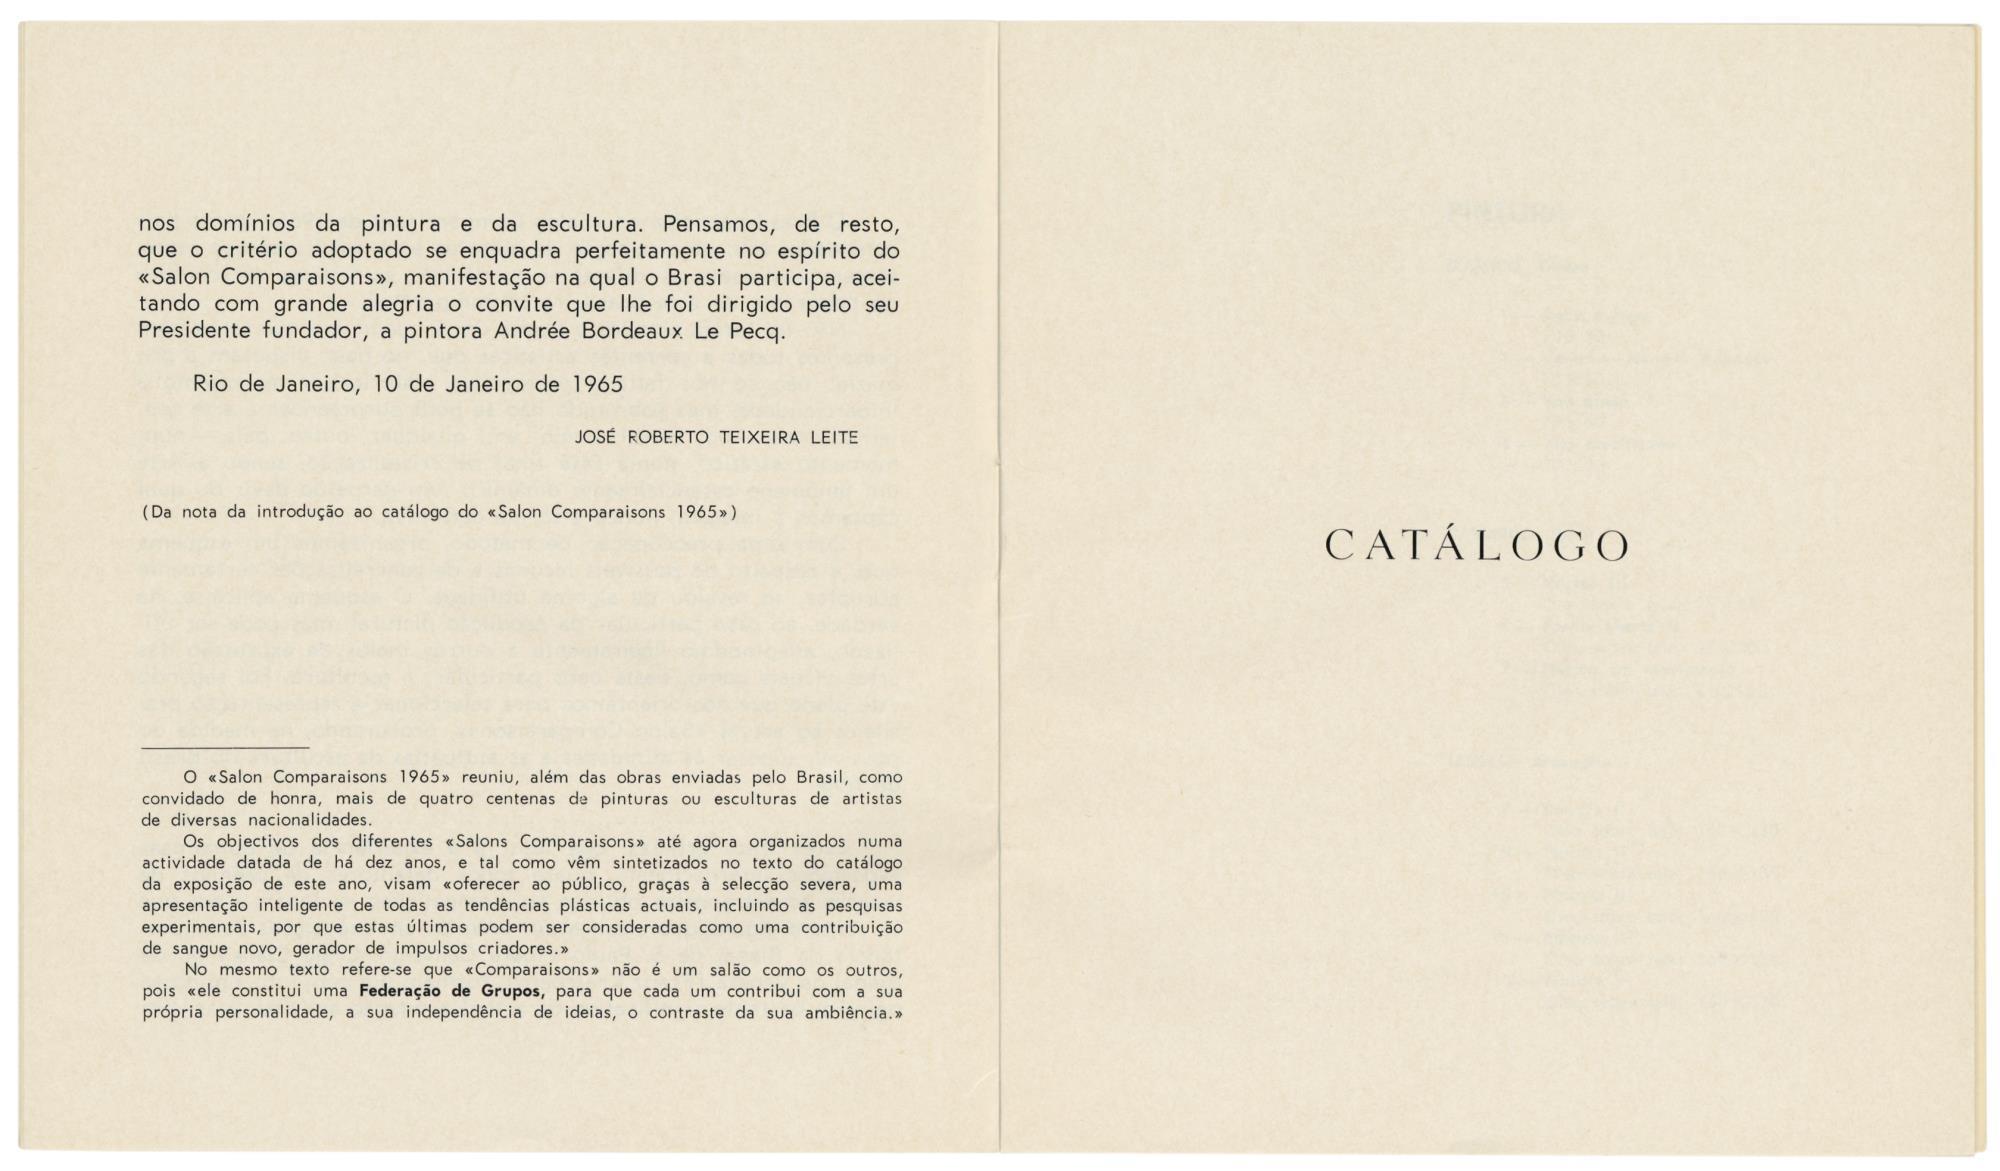 1965_Pint_Esc__Artistas_Bras_catalogo_spread4_AHP1256.2